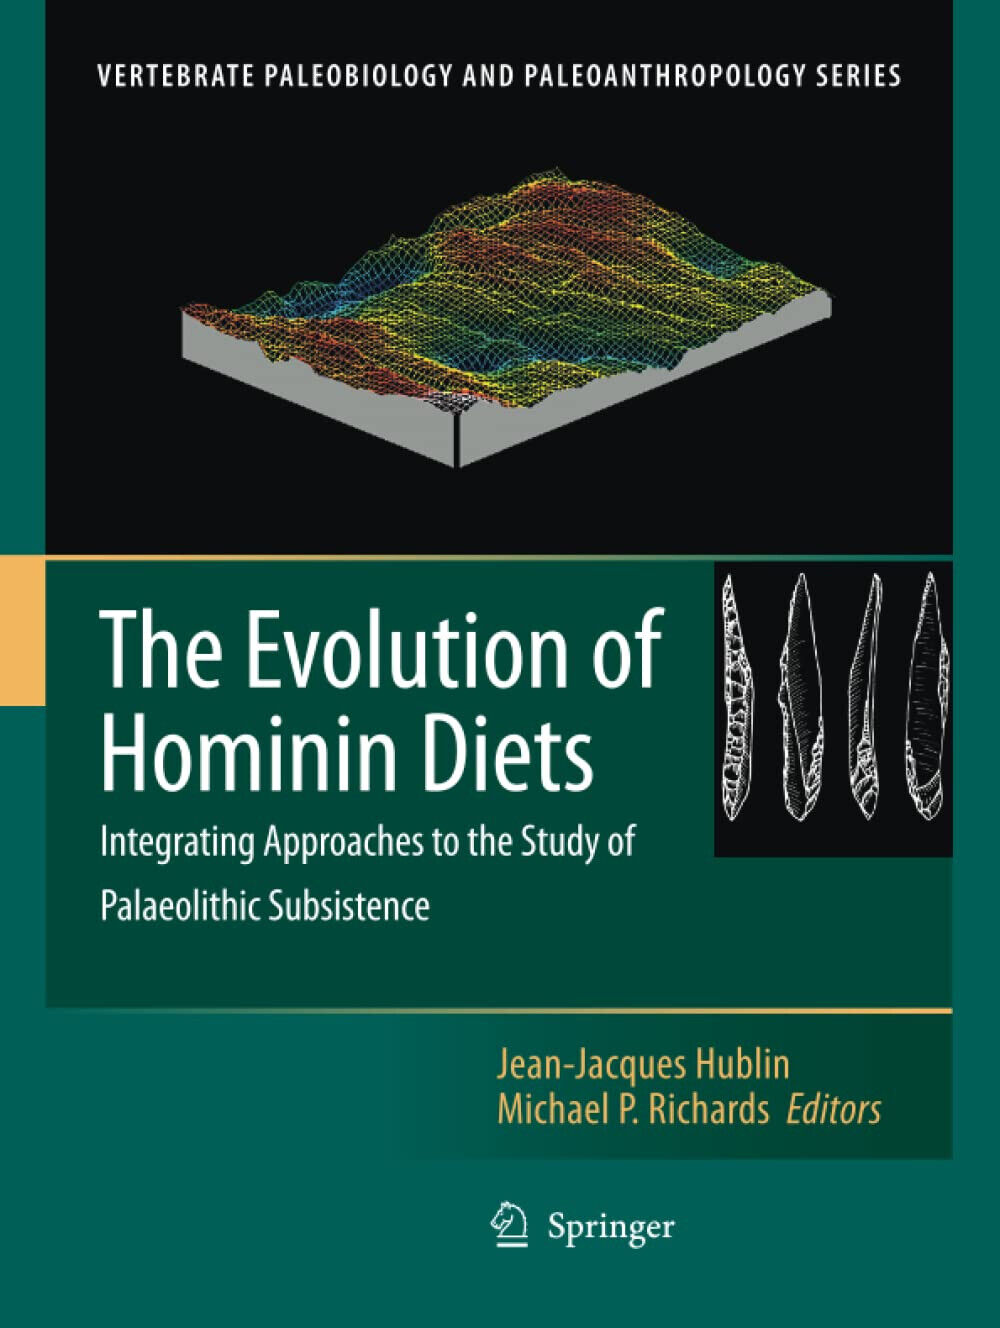 The Evolution of Hominin Diets - Jean-Jacques Hublin - Springer, 2010